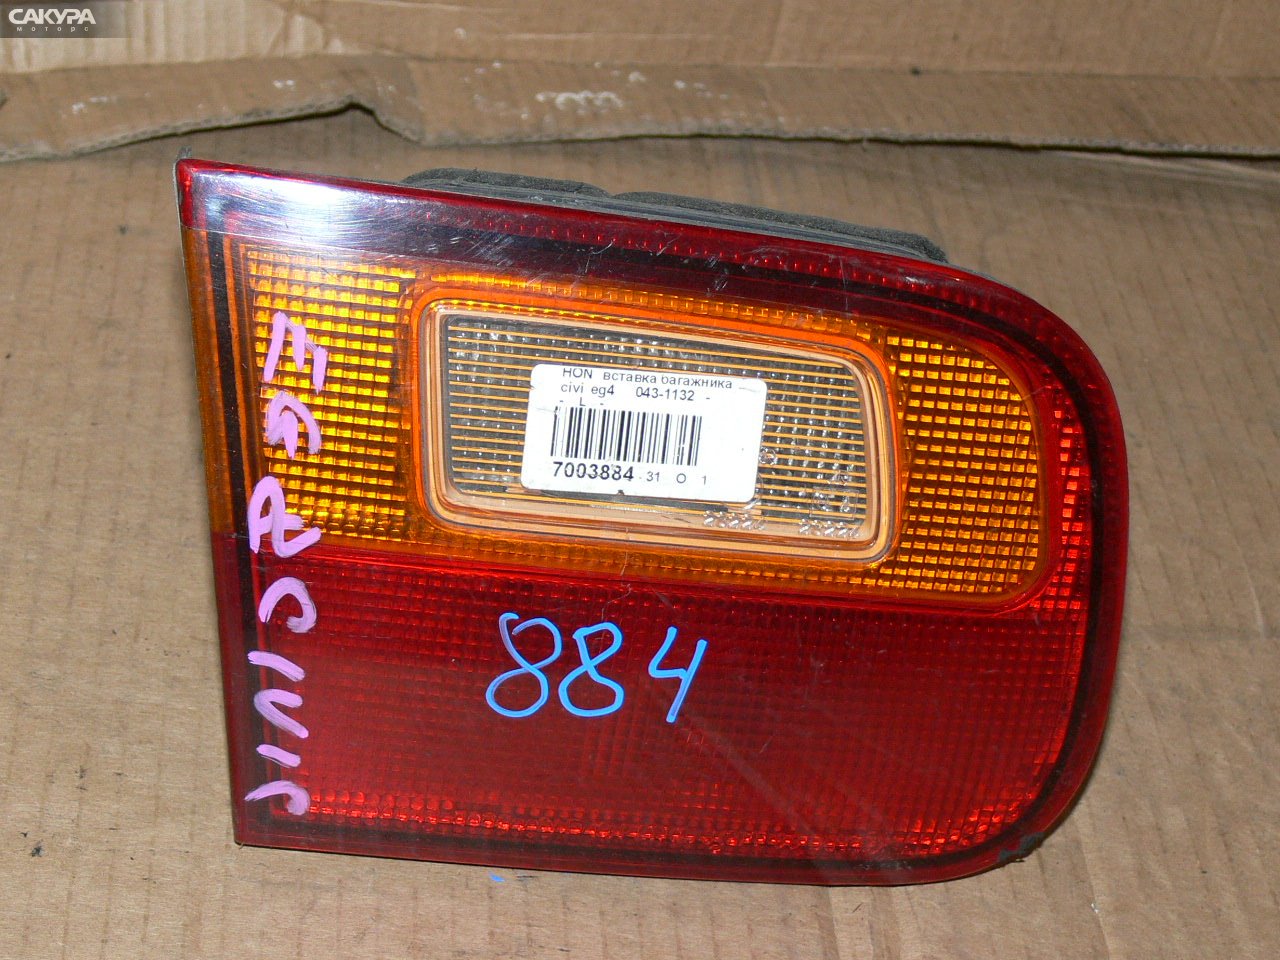 Фонарь вставка багажника левый Honda Civic EG4 043-1132: купить в Сакура Иркутск.